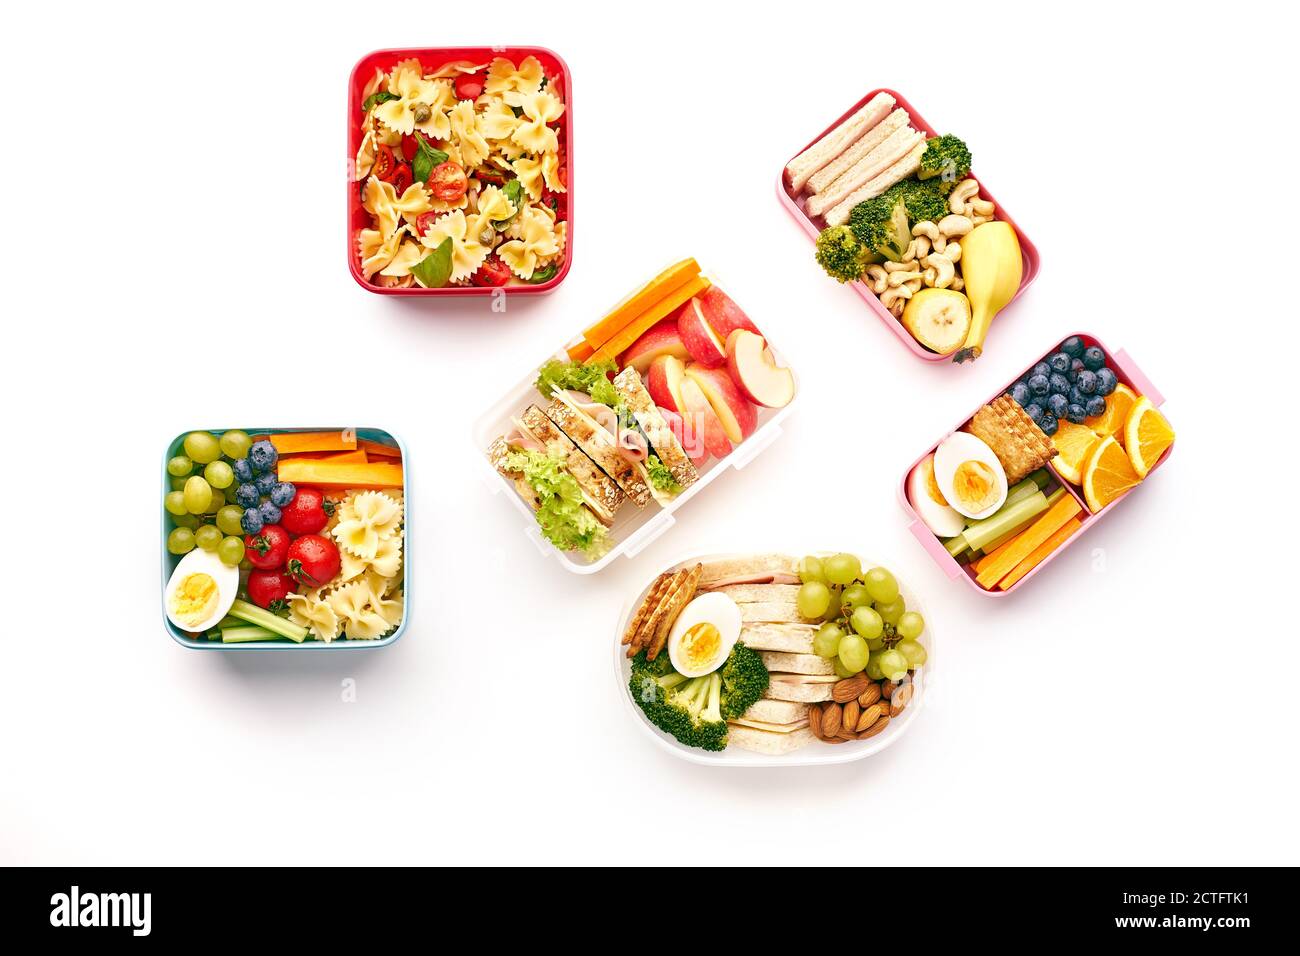 Vue de dessus des boîtes à lunch de bureau avec divers repas sains nutritifs sur fond blanc. Repas du midi d'en haut Banque D'Images